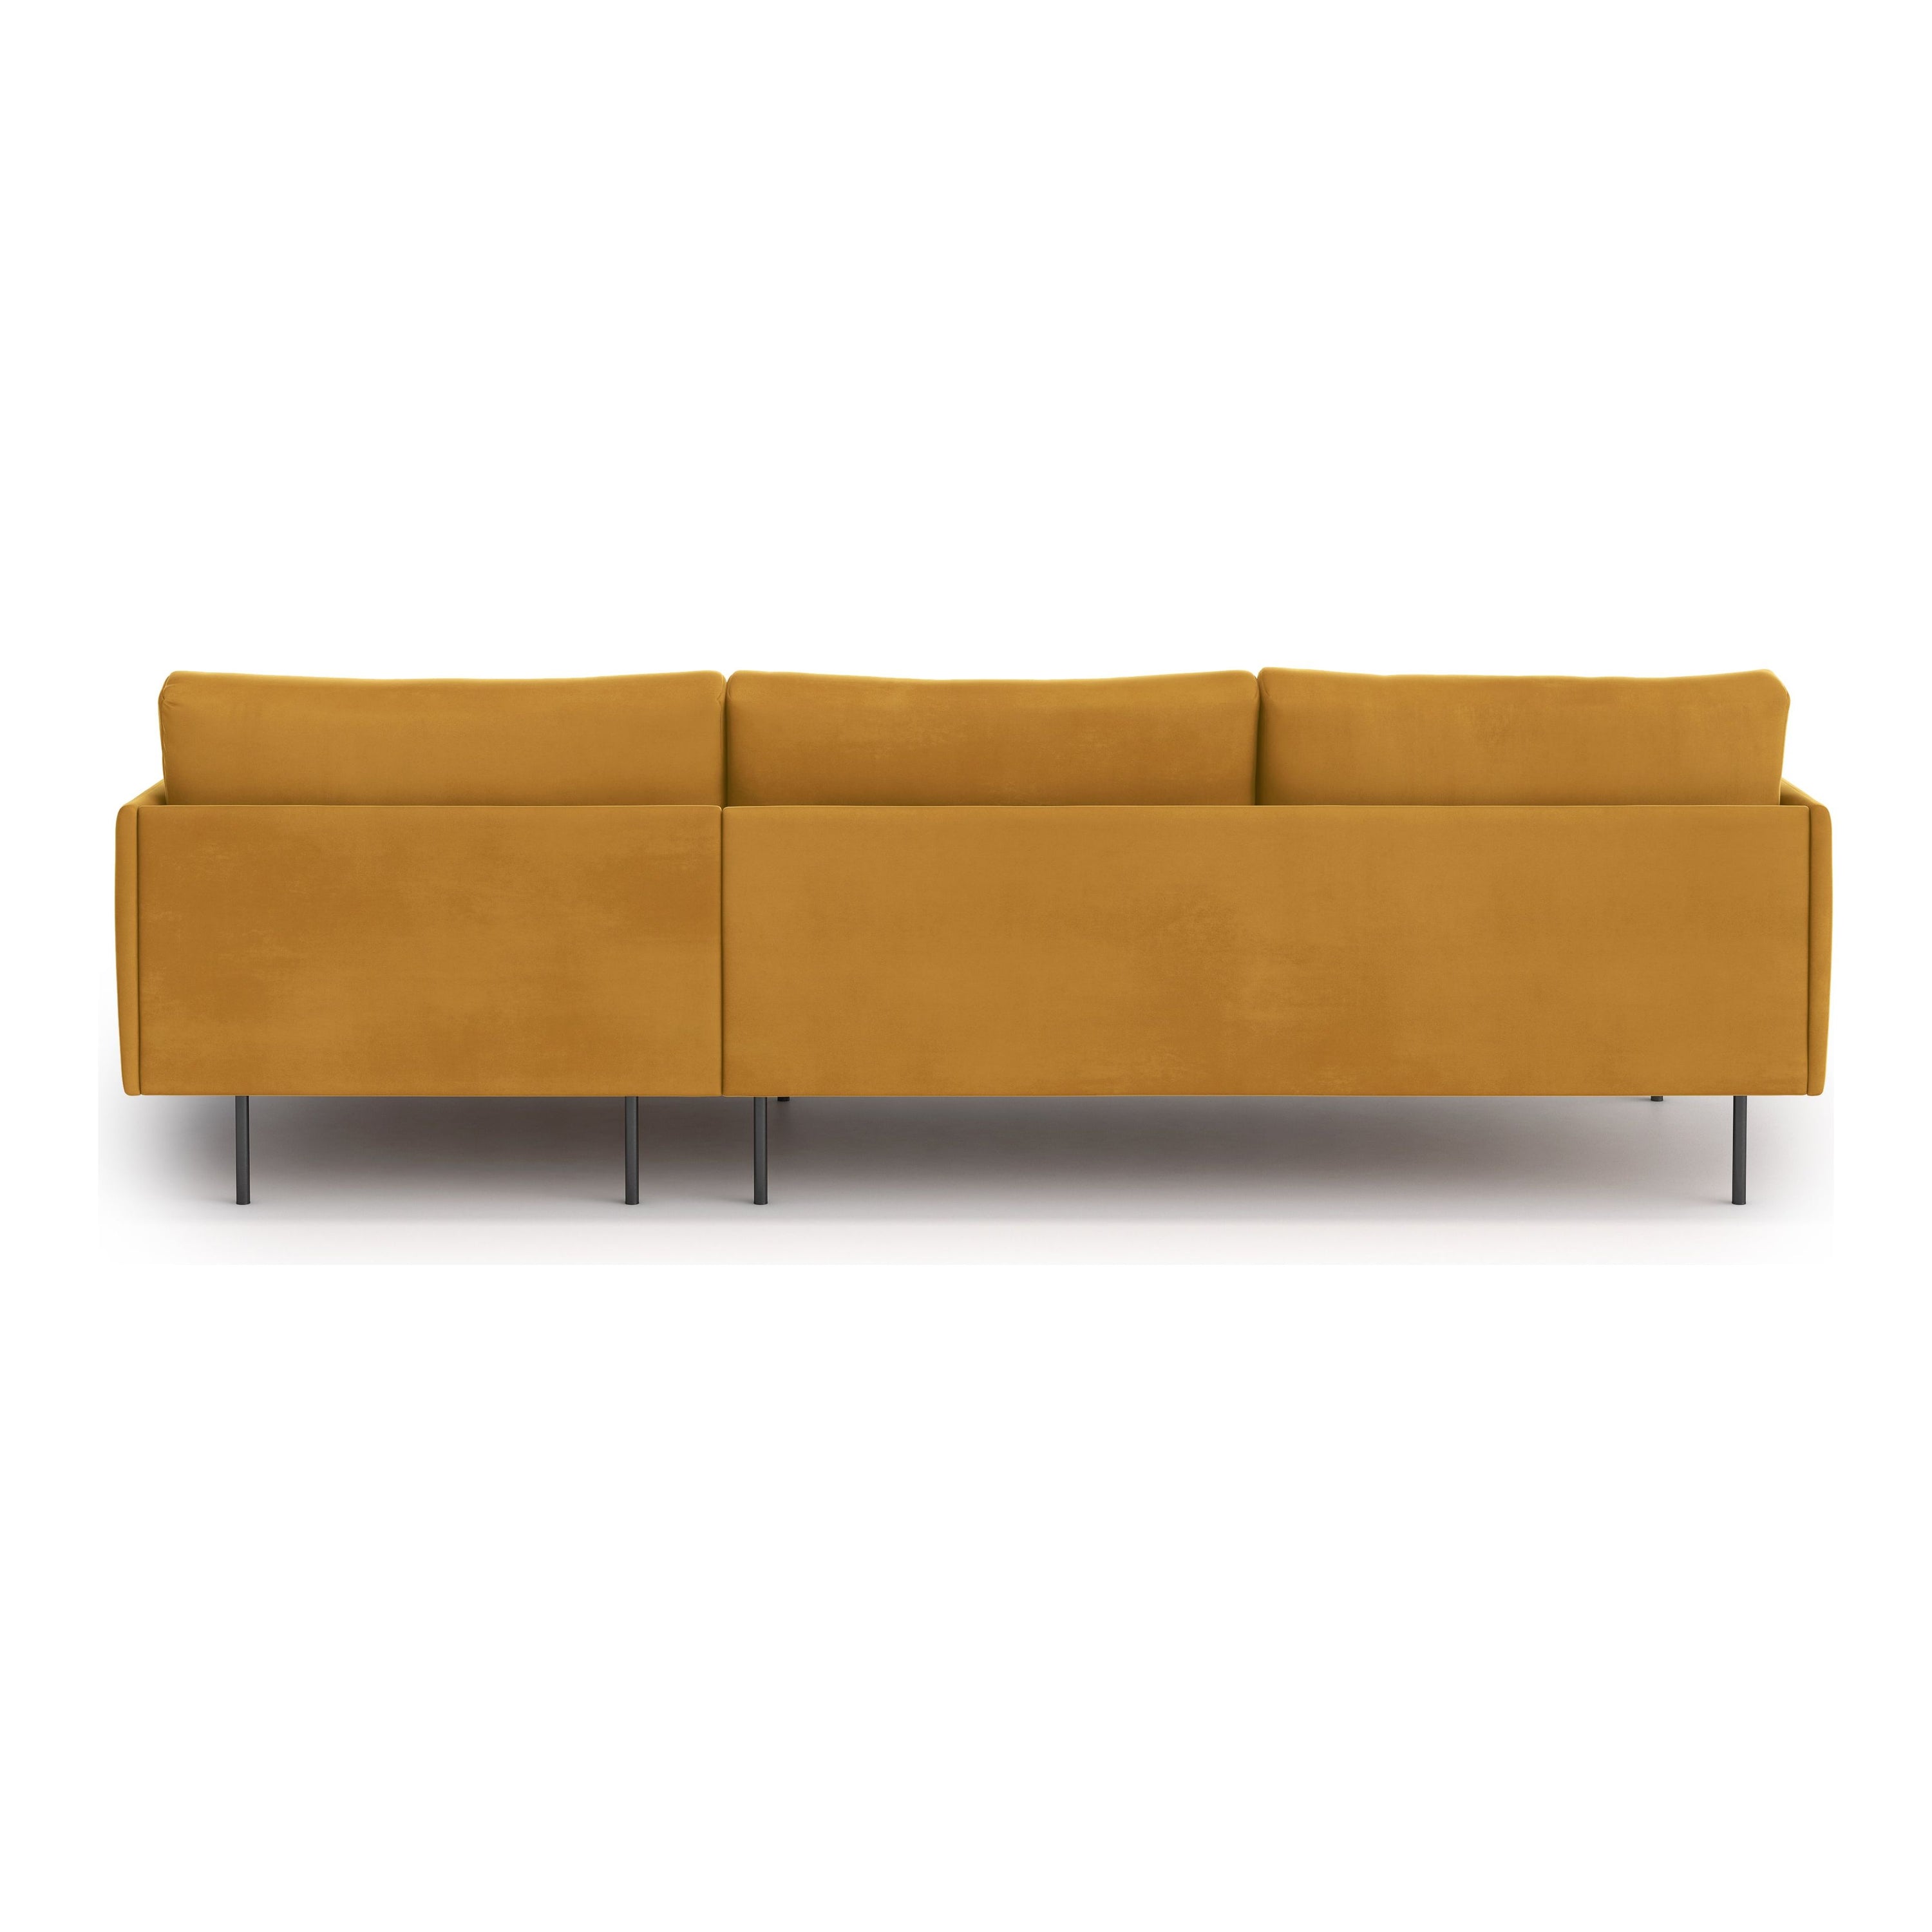 UMA kampinė sofa, oranžinė spalva, dešinė